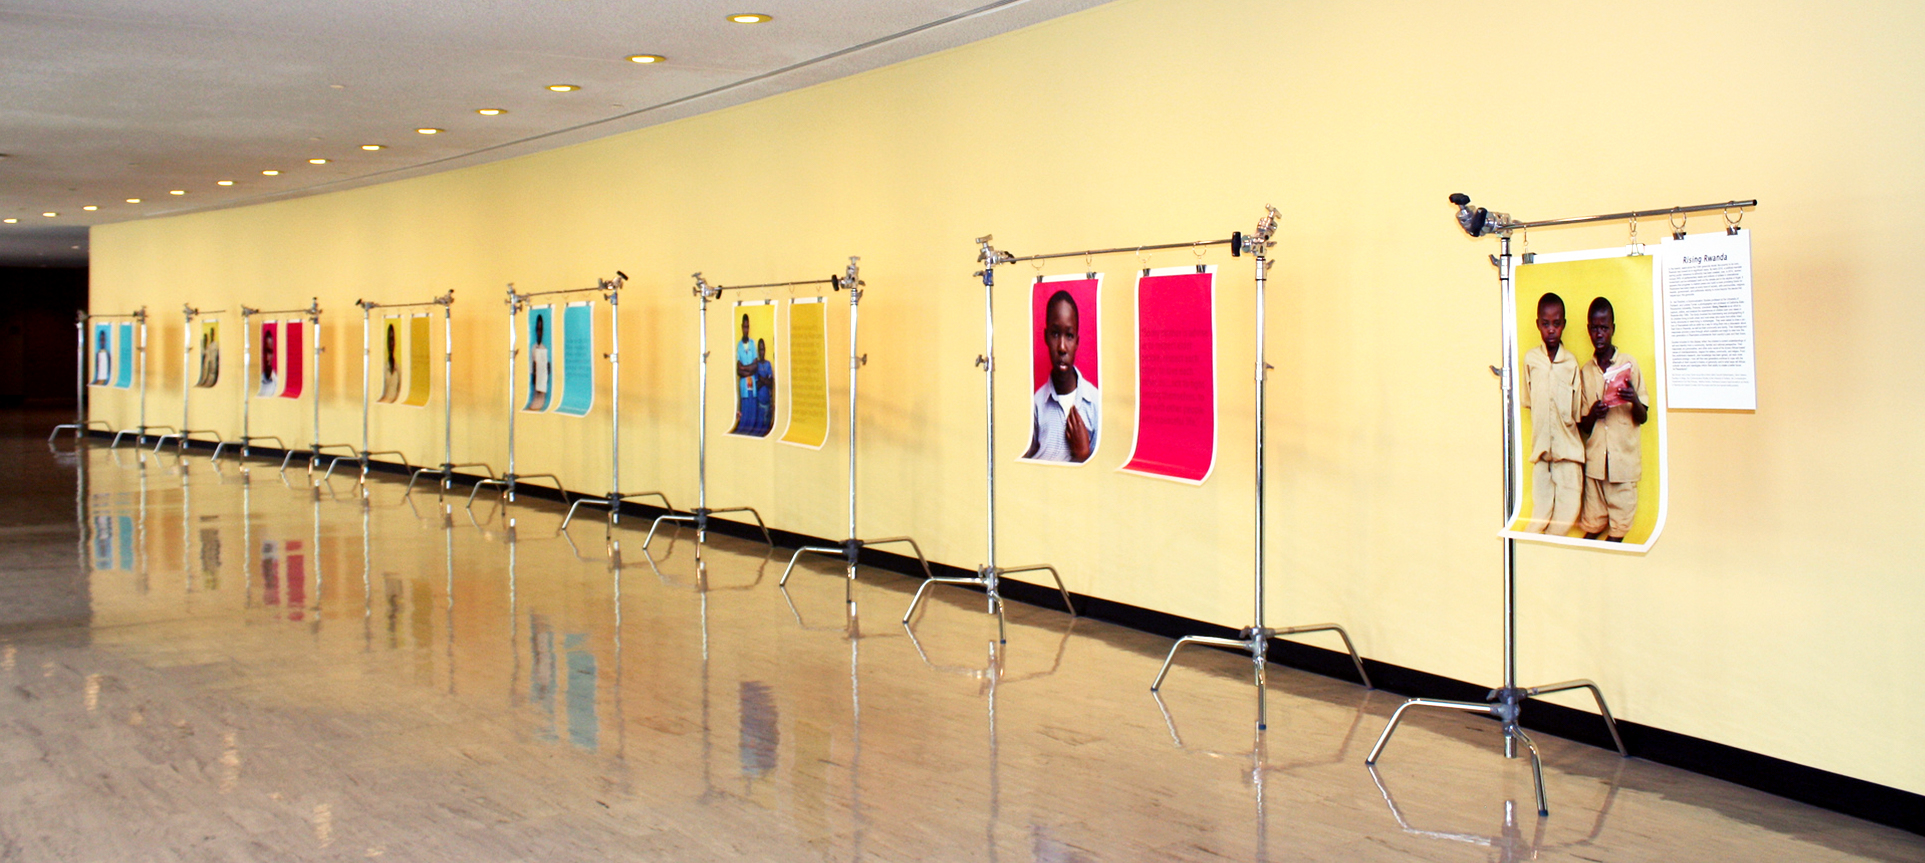 Display of the exhibit 'Rising Rwanda' at at UNHQ